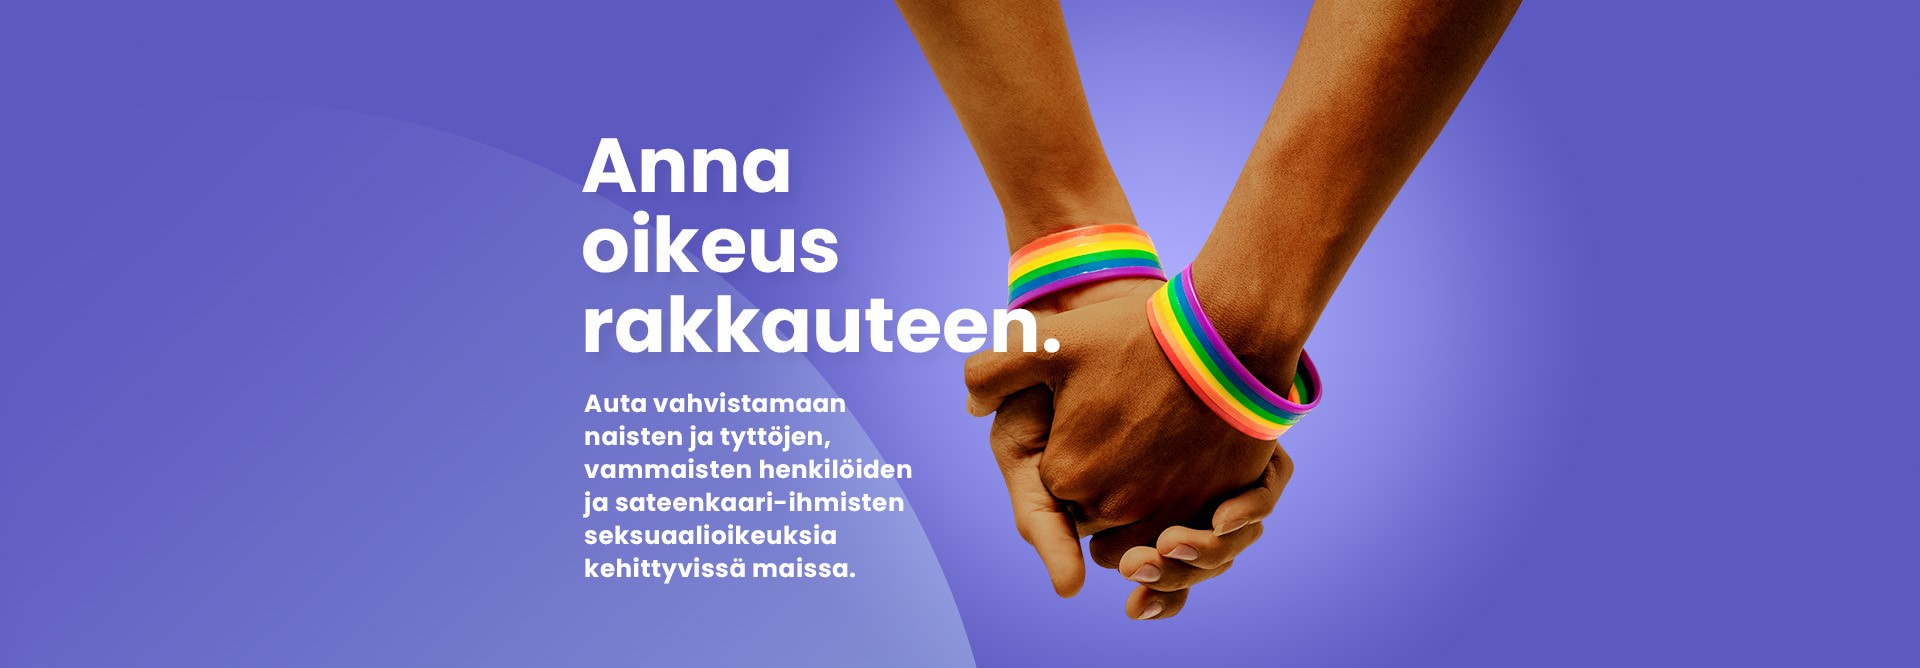 Oikeus rakkauteen -kampanjan kuva, jossa yhteenliitetyt kädet, joissa sateenkaarirannekkeet.